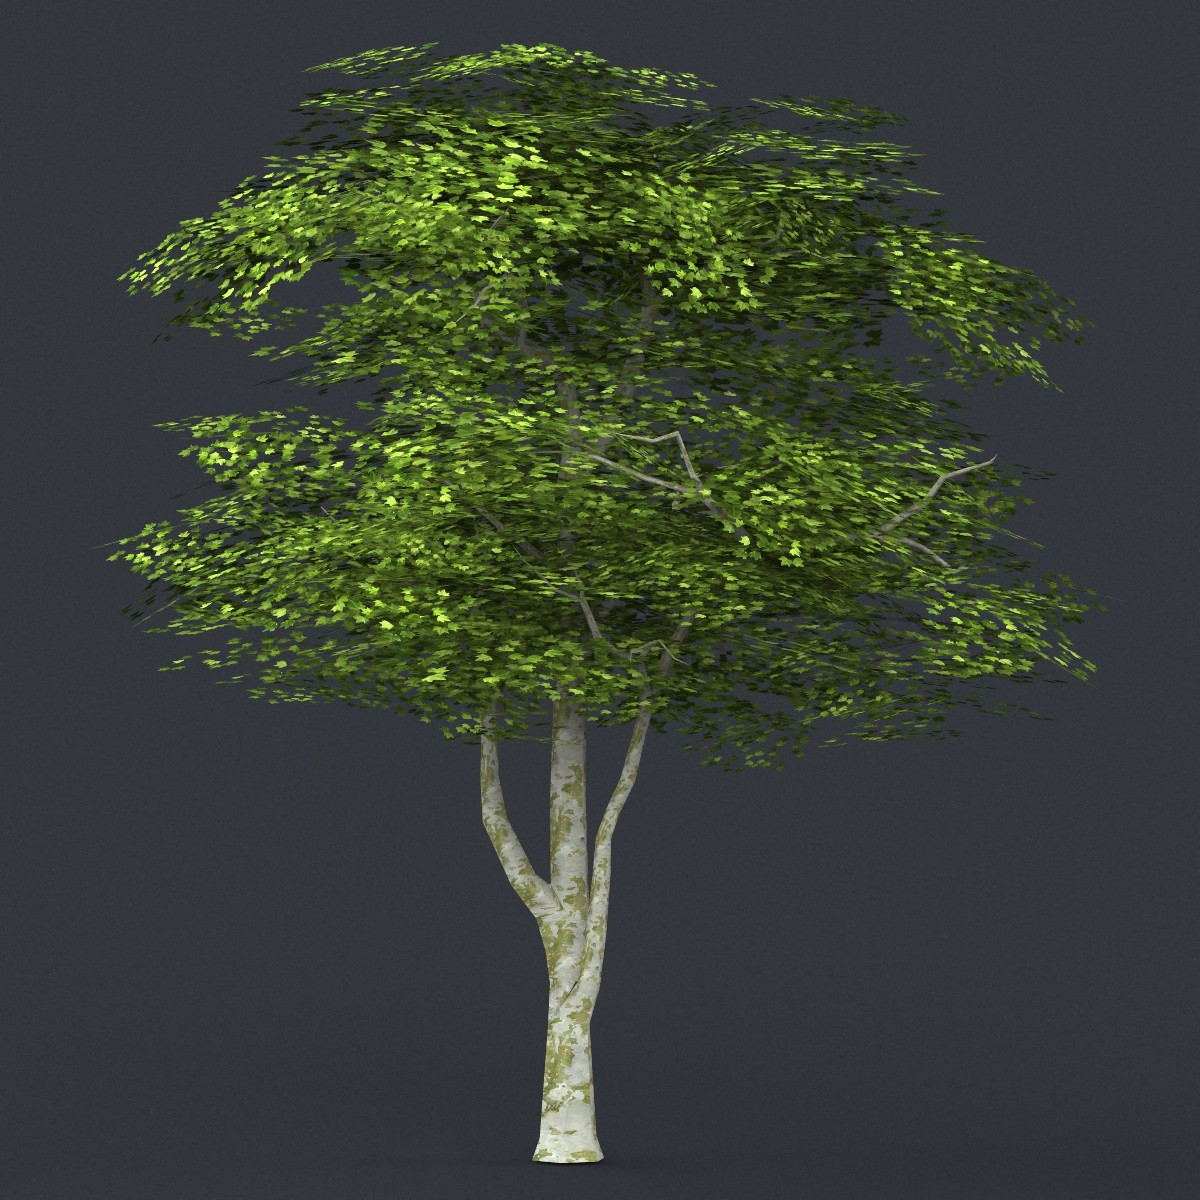 Дерево в 3 d. Лоу Поли дерево 3ds Max. Деревья в 3ds Max. 3d деревья Low Poly. Низкополигональные деревья 3ds Max.